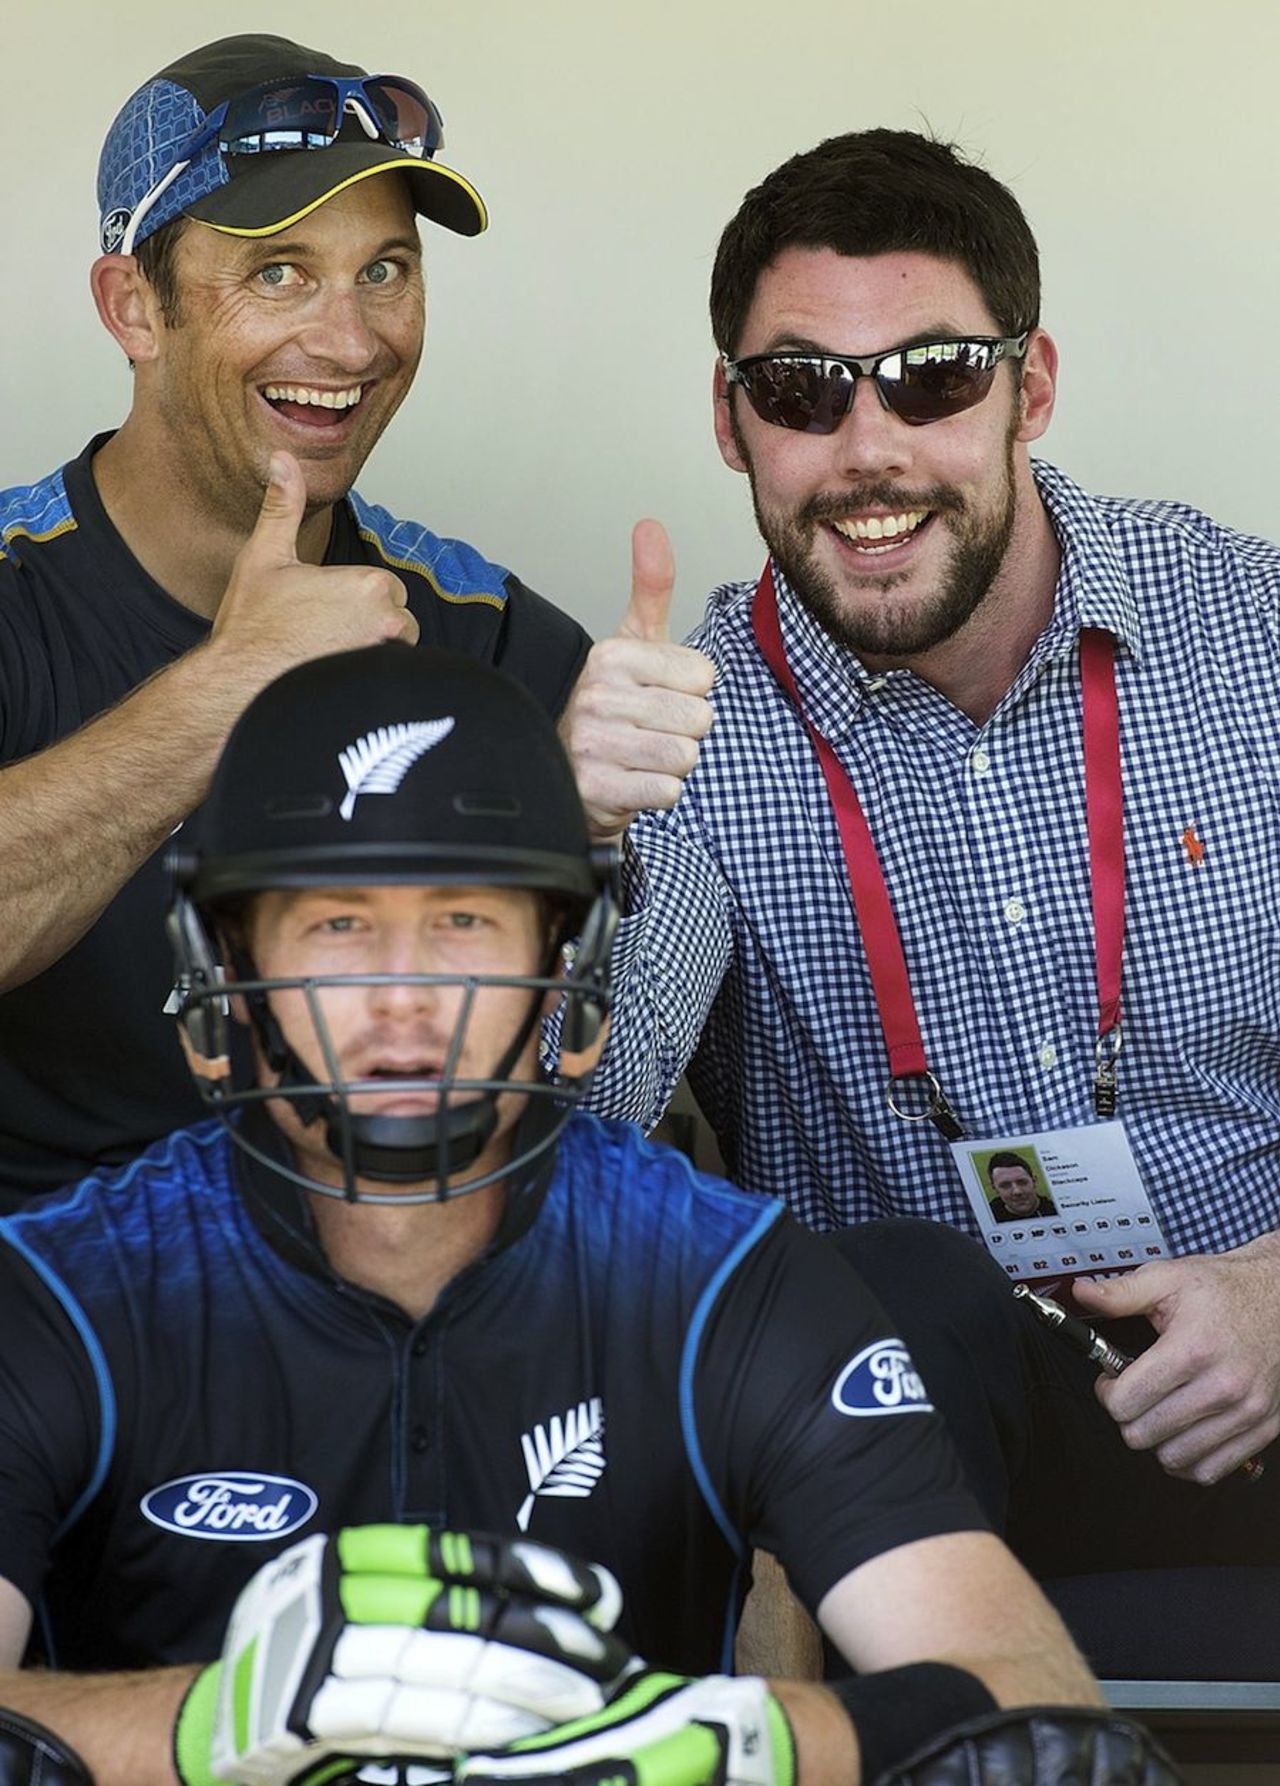 Shane Bond gives the thumbs up as Martin Guptill waits to go out and bat, New Zealand v Sri Lanka, 5th ODI, Dunedin, January 23, 2015